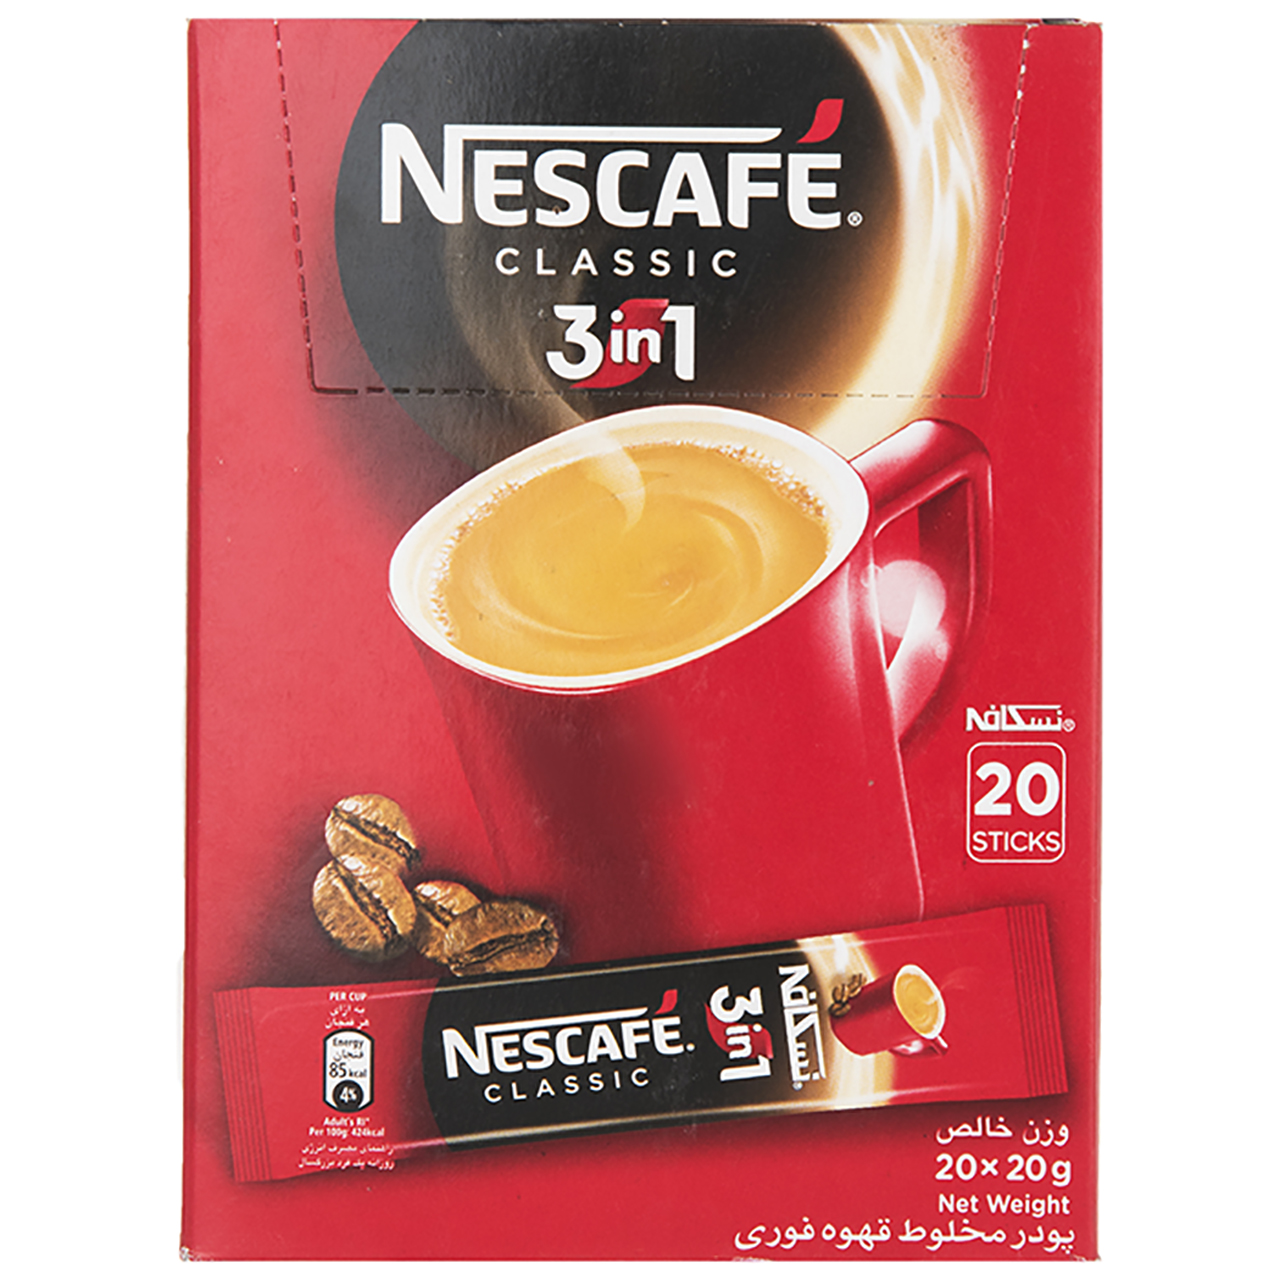 قهوه فوری کافی میکس نسکافه 3 در 1 - 20 ساشه 20 گرمی